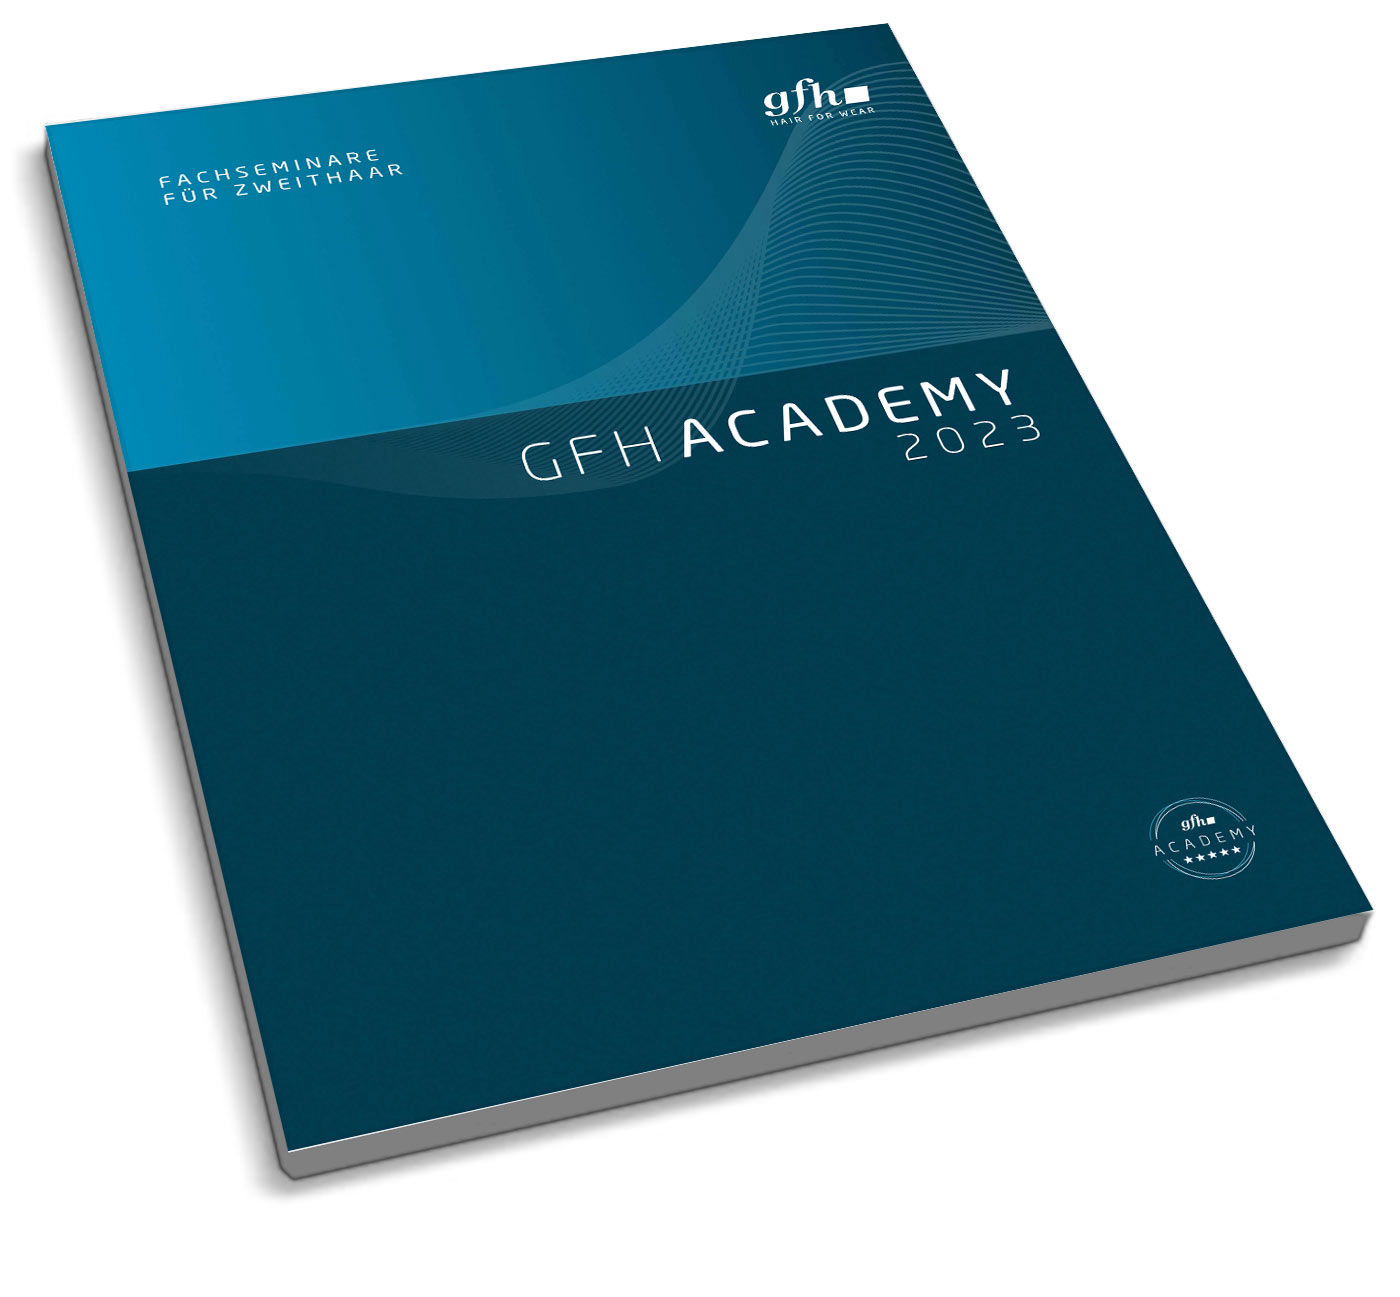 gfh academy catalog for gfh seminars